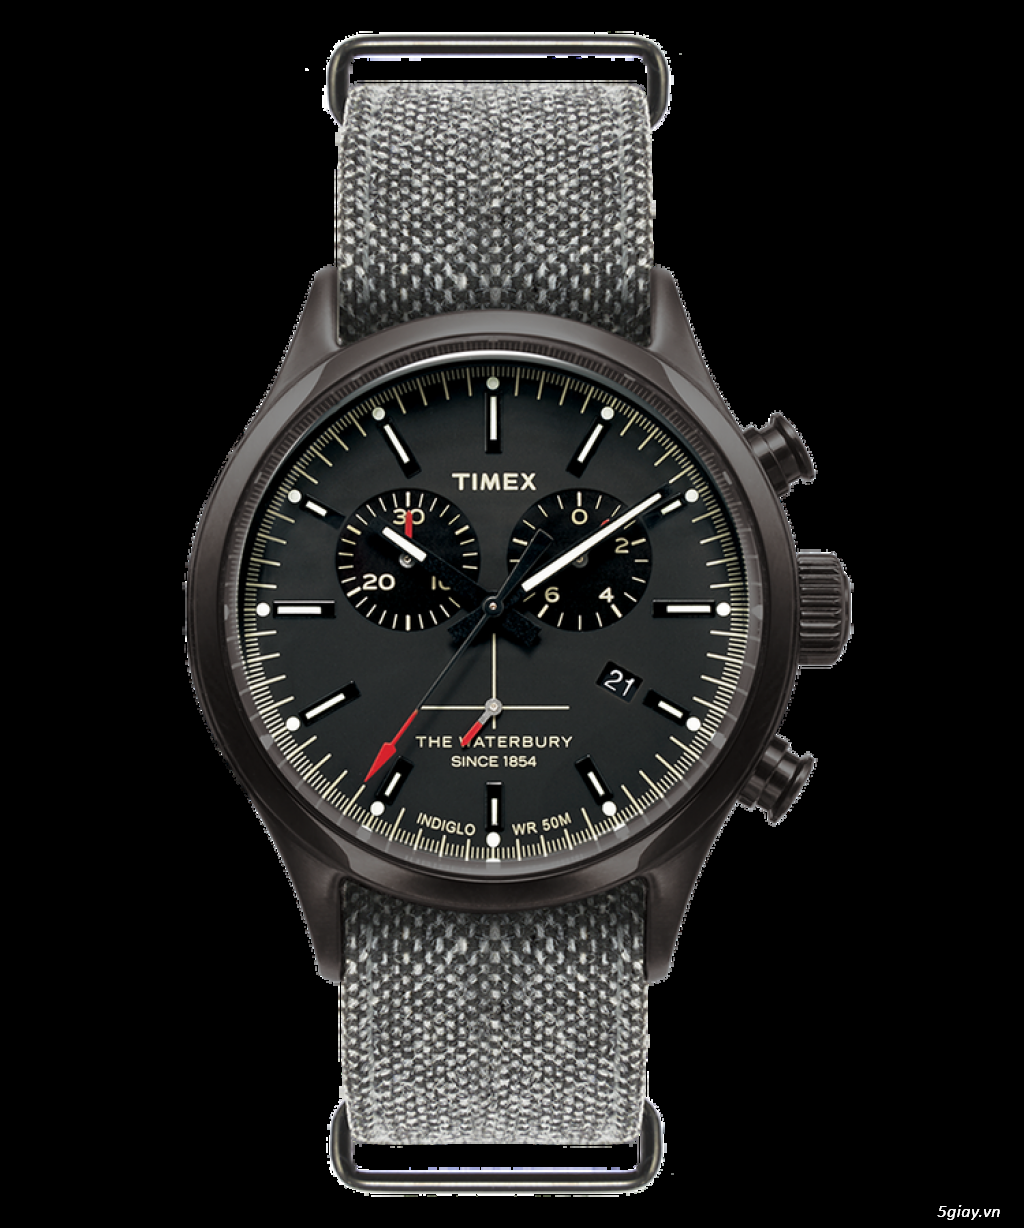 Chuyên đồng hồ swatch, timex xách tay từ Mỹ